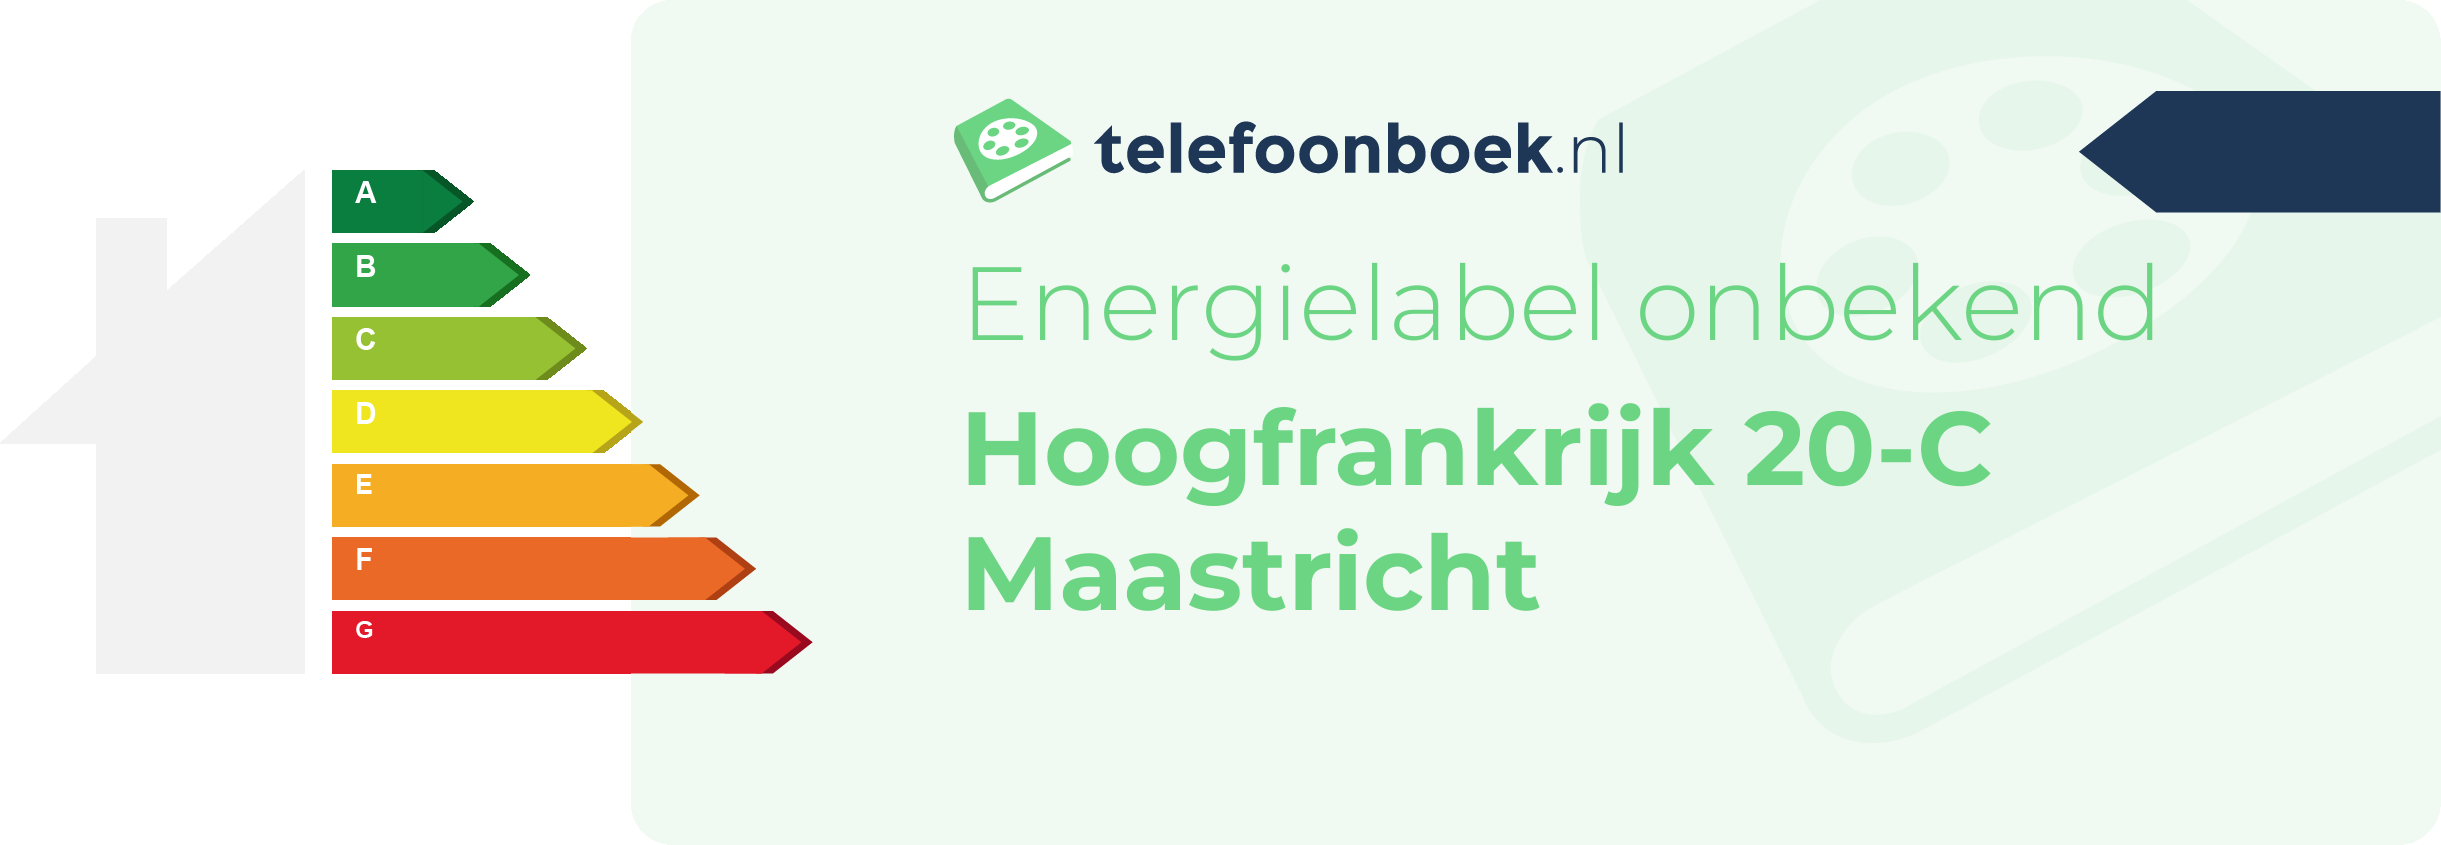 Energielabel Hoogfrankrijk 20-C Maastricht